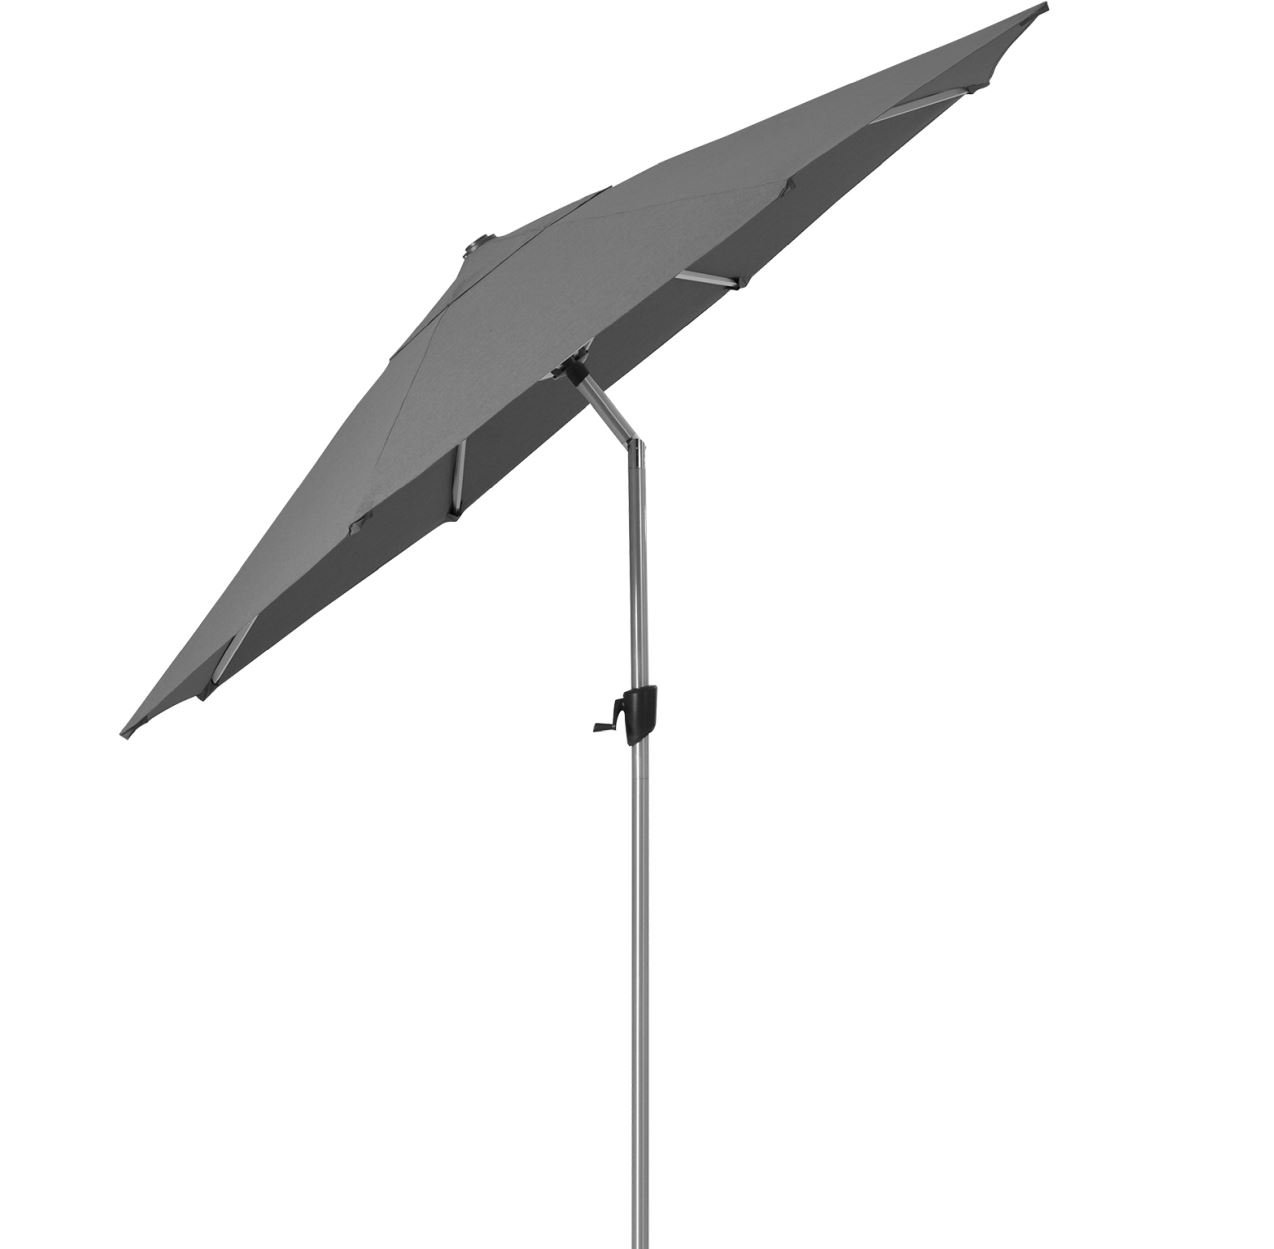 Billede af Cane-line Outdoor Sunshade Parasol M/Tilt Ø: 300 cm - Anthracite M/Grow Parasolfod M/Hjul Inkl Planteboks 50 x 50 cm - Lava Grey 